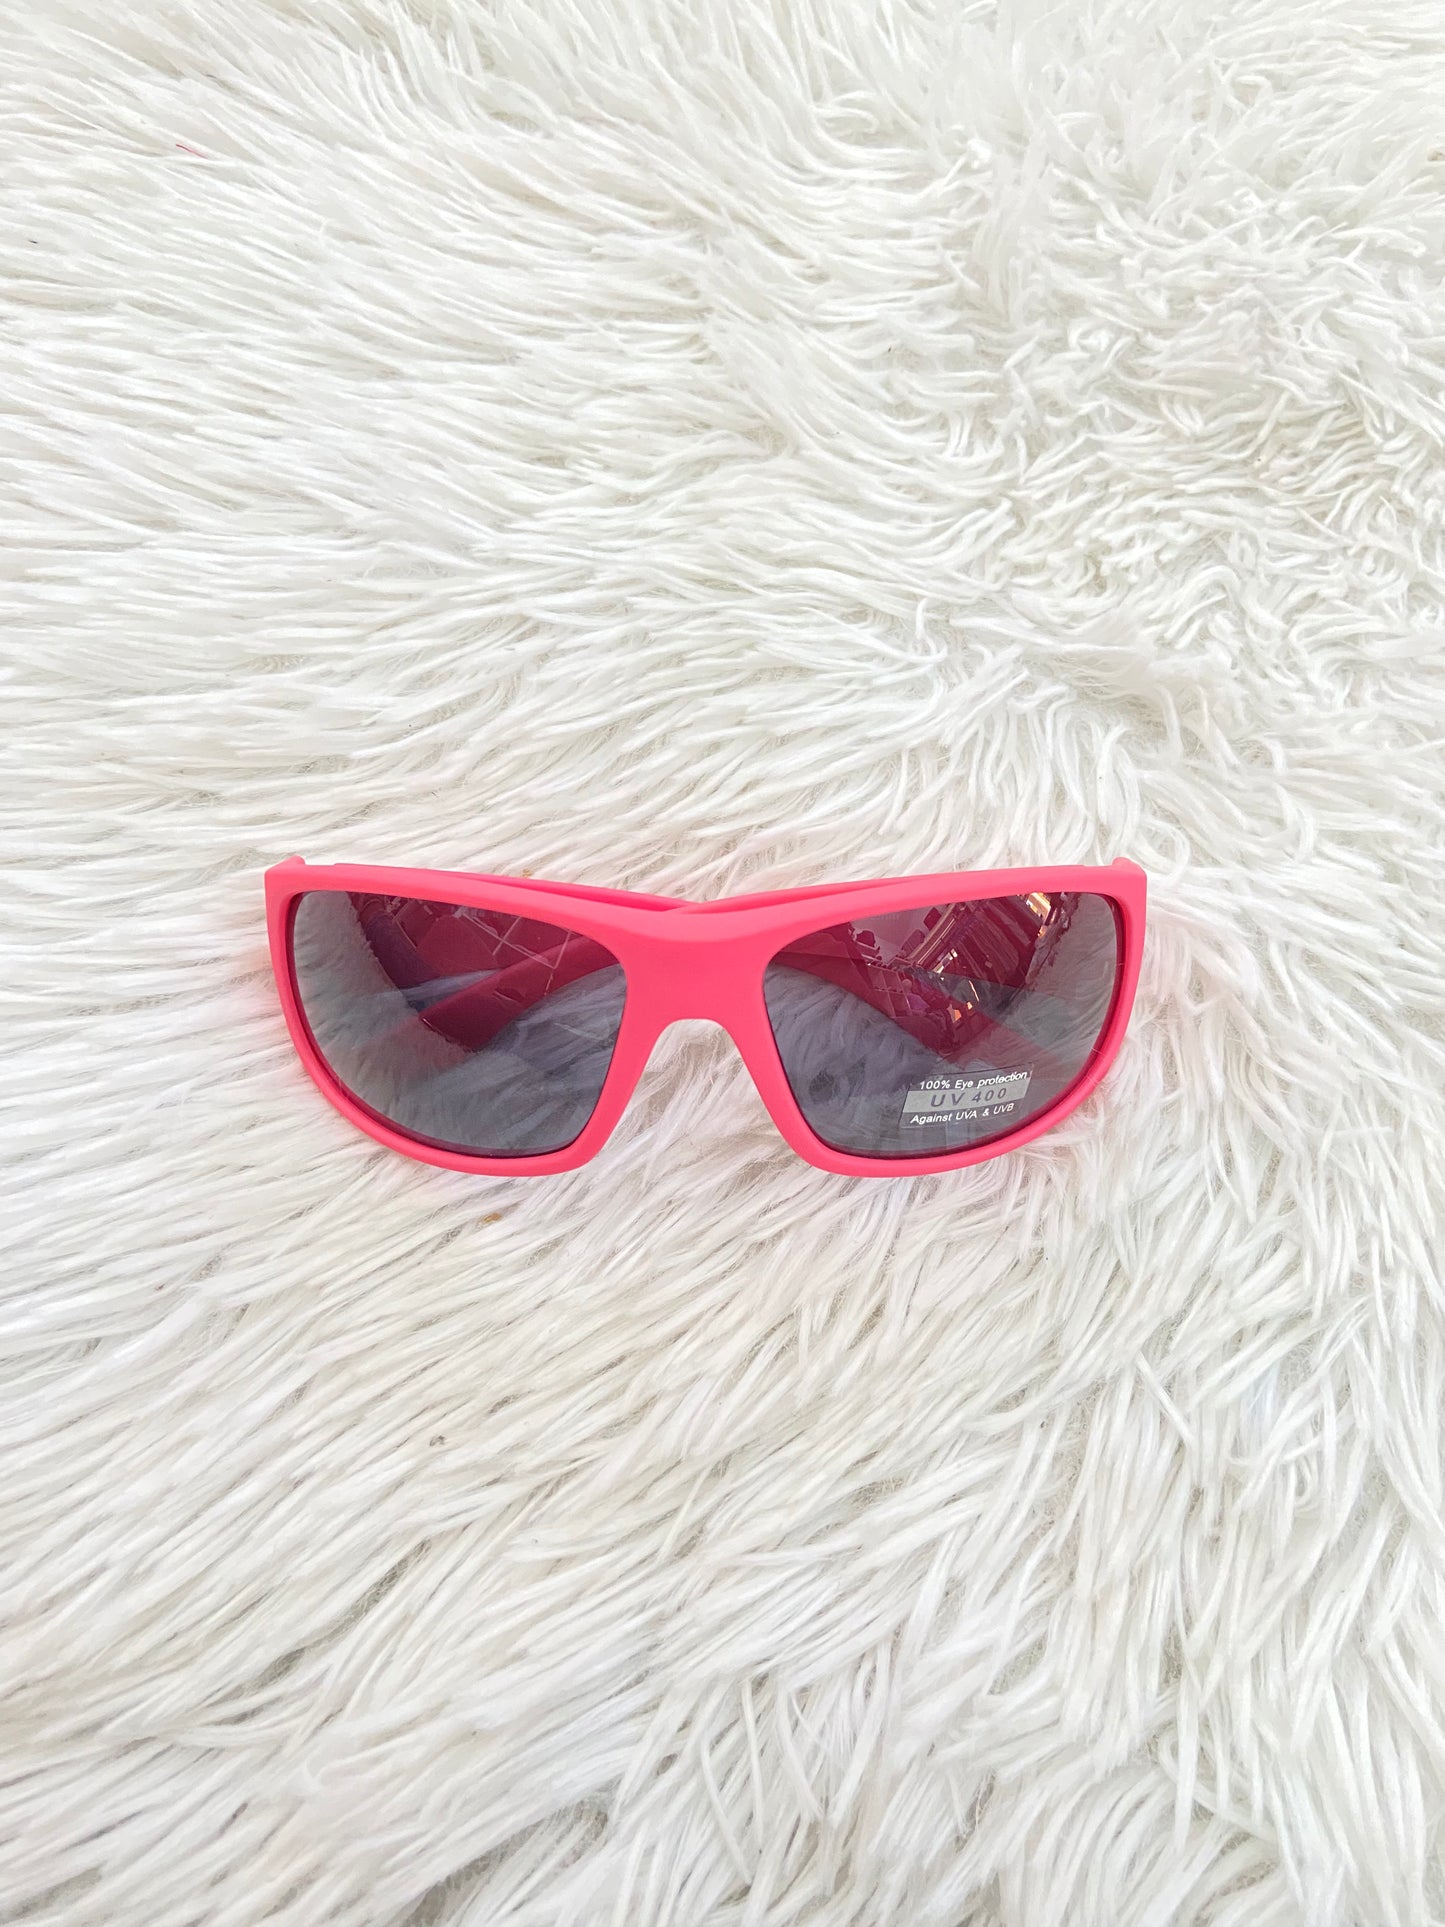 Lentes Fashion Nova original de color rosado opaco con cristales de color negro curvos copo finos PROTECTION UV 400